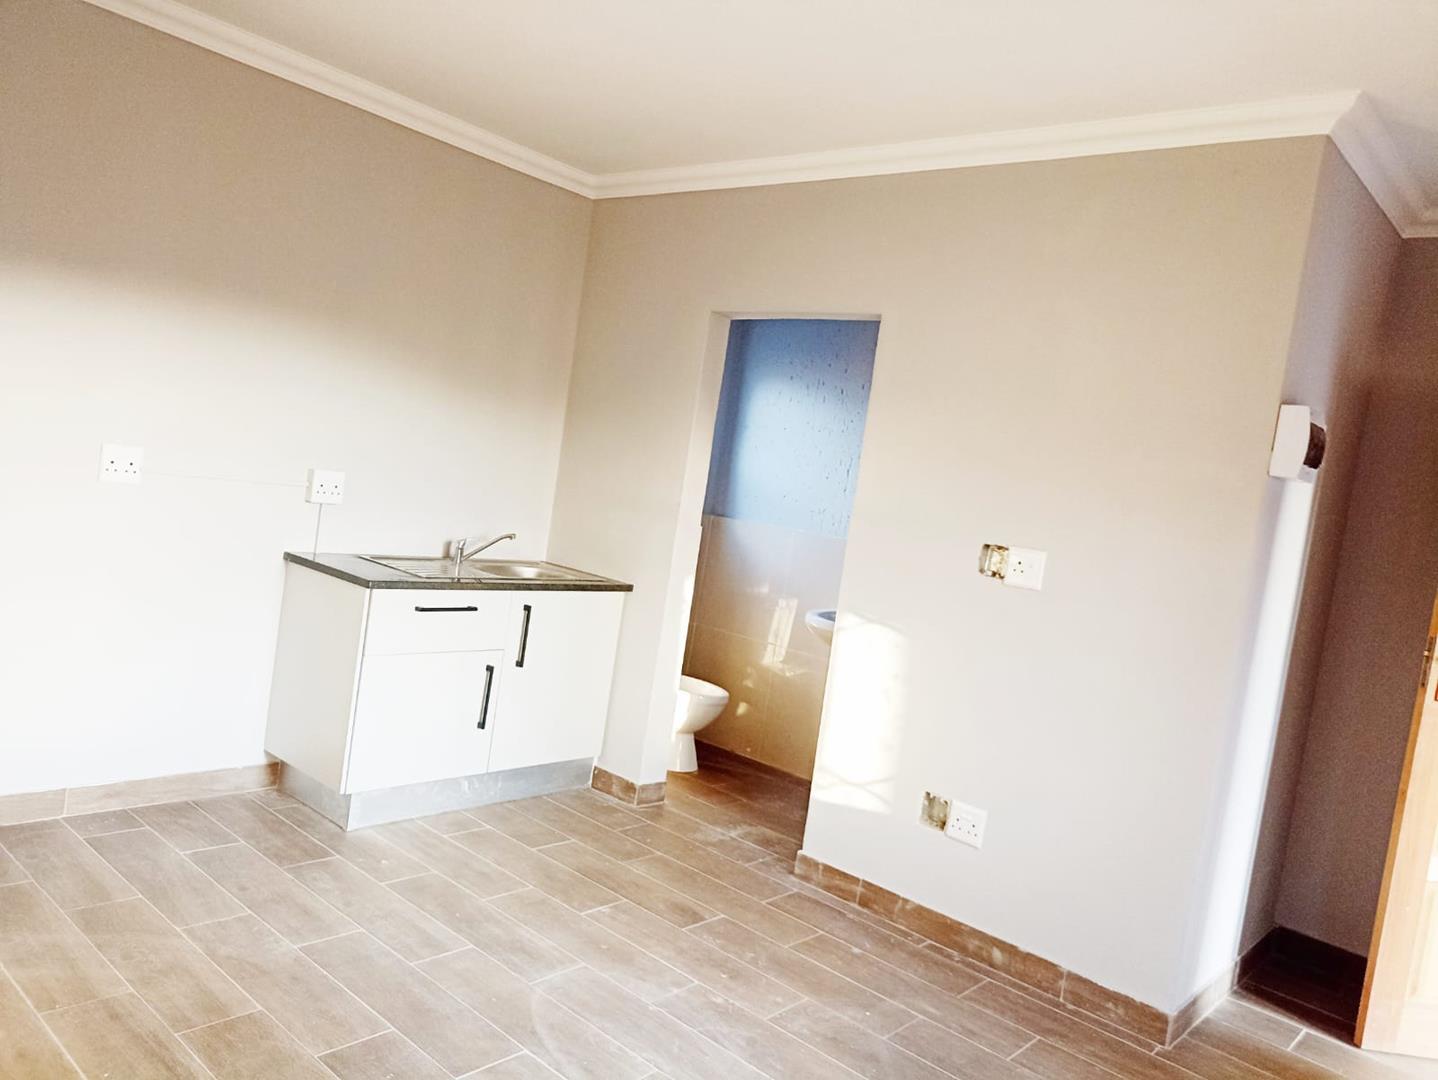 To Let 0 Bedroom Property for Rent in Vosloorus Gauteng